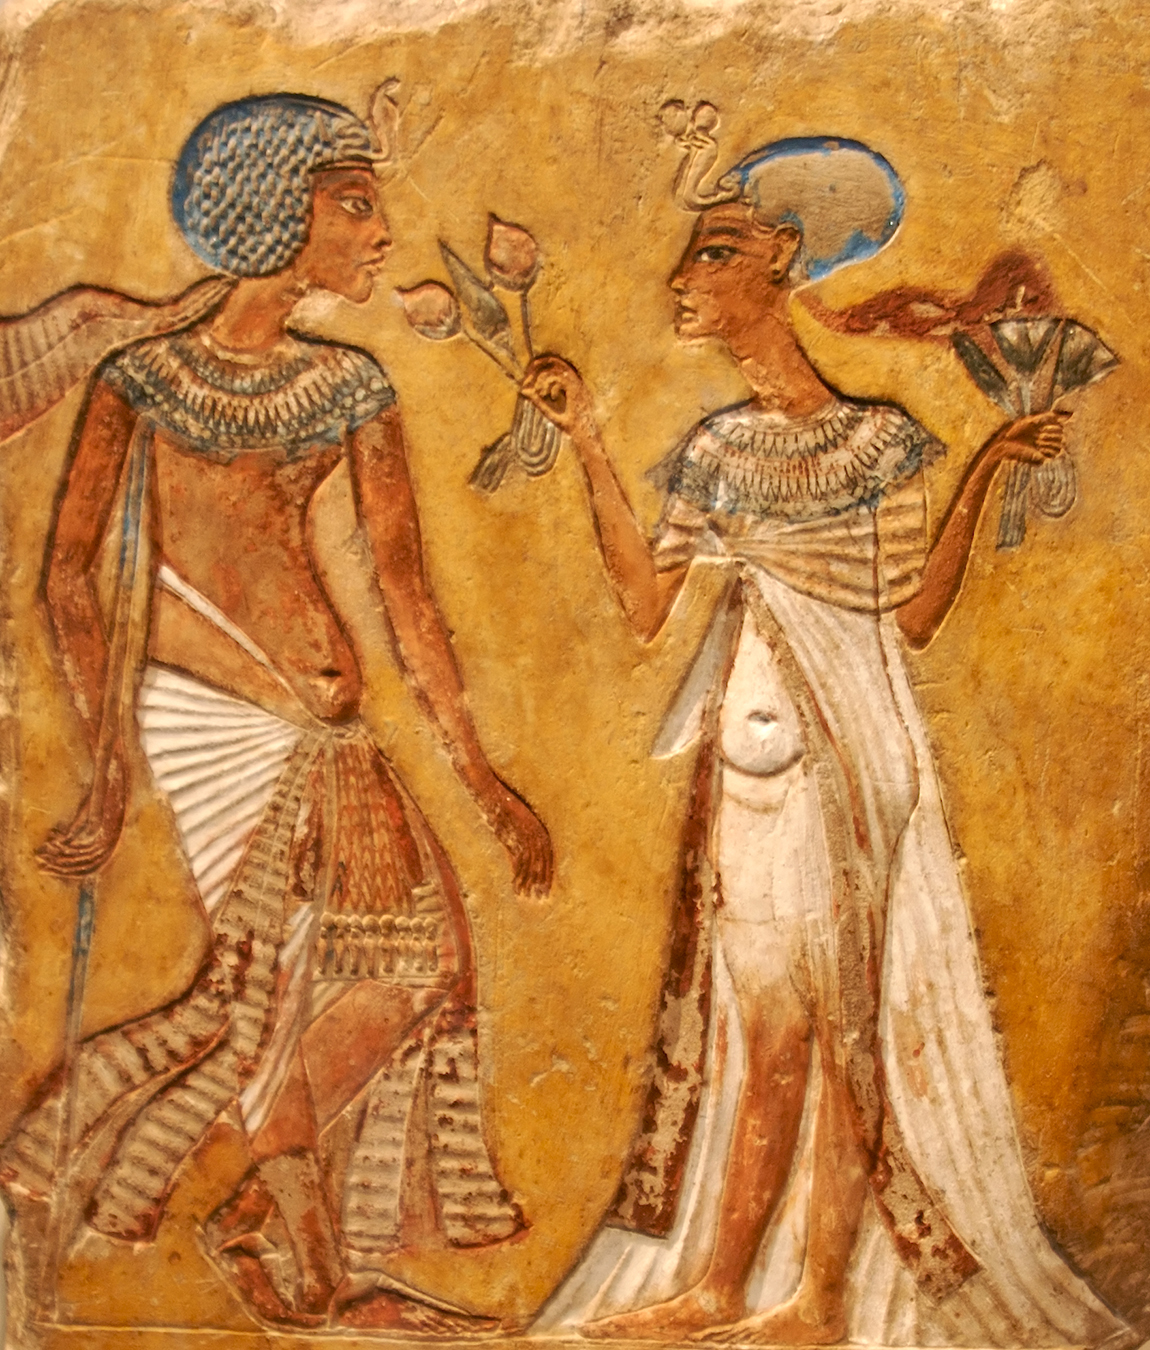 Поиск видео по запросу: полнометражный порнофильм секс в древнем египте